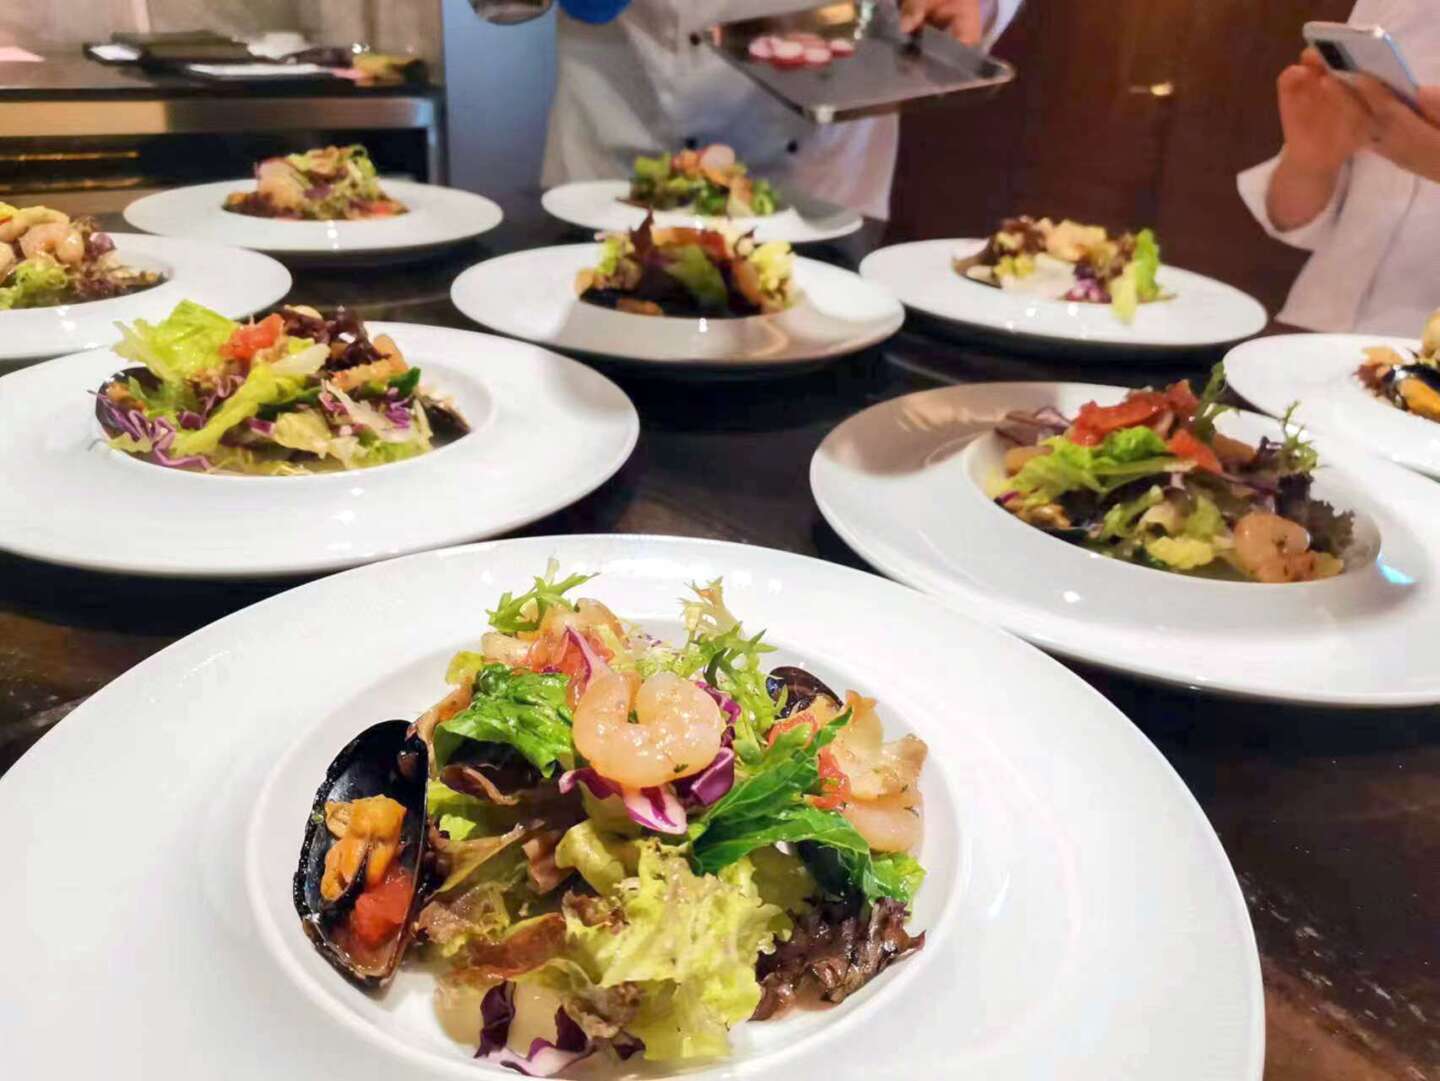 葉聖欣認為，本澳的美食有講究些烹飪技巧技術的、有與本地歷史及文化相關的，已漸形型成美食一個品牌。圖片受由受訪者提供